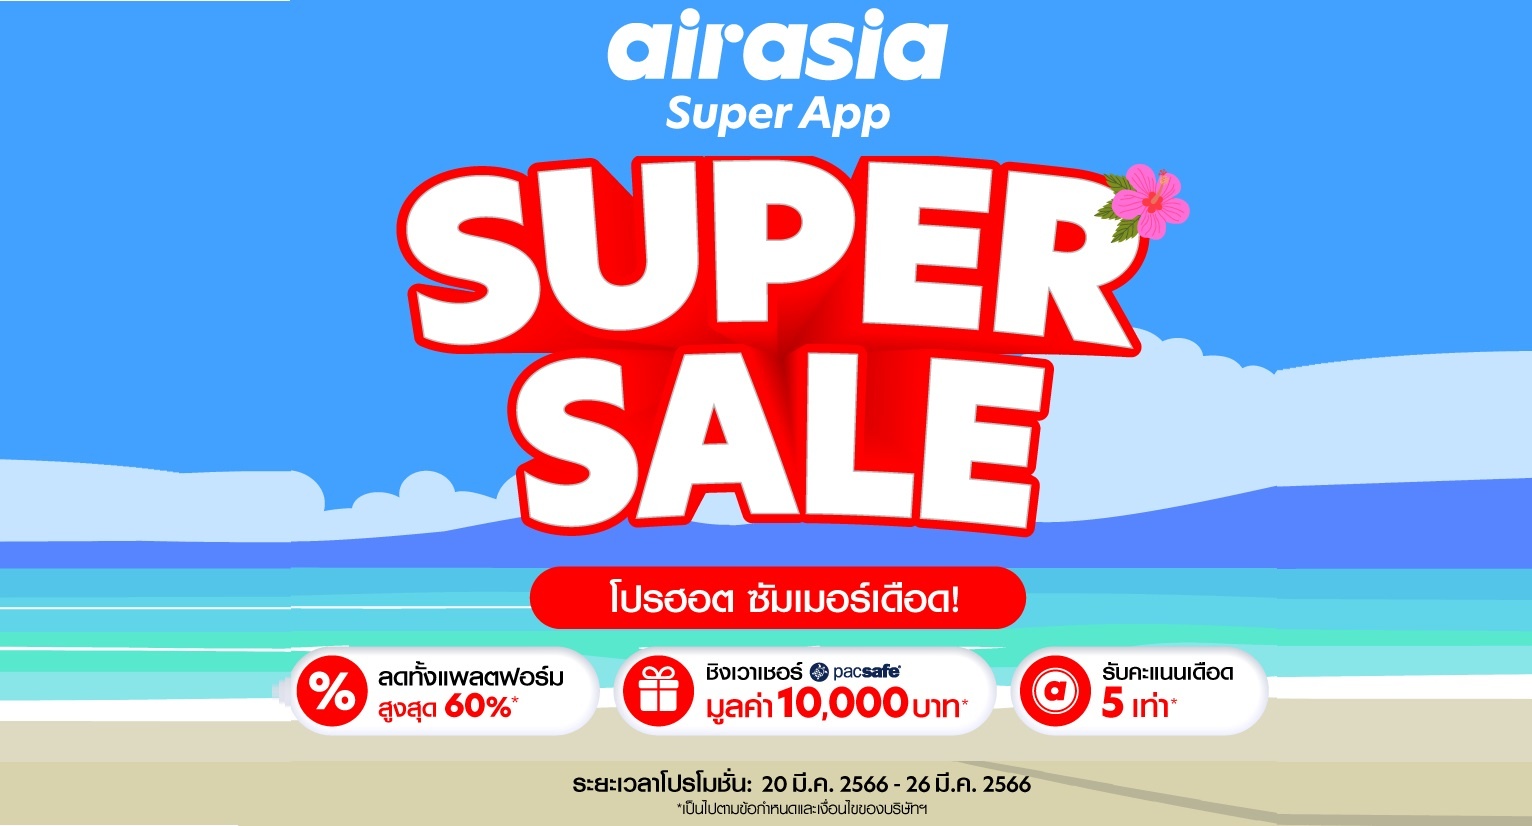 โปรโมชั่นลดแรงแซงหน้าร้อน จาก airasia Superapp Super Sale ช้อปเยอะสุด รับสิทธิ์บินฟรี สู่เมืองฟุกุโอกะ